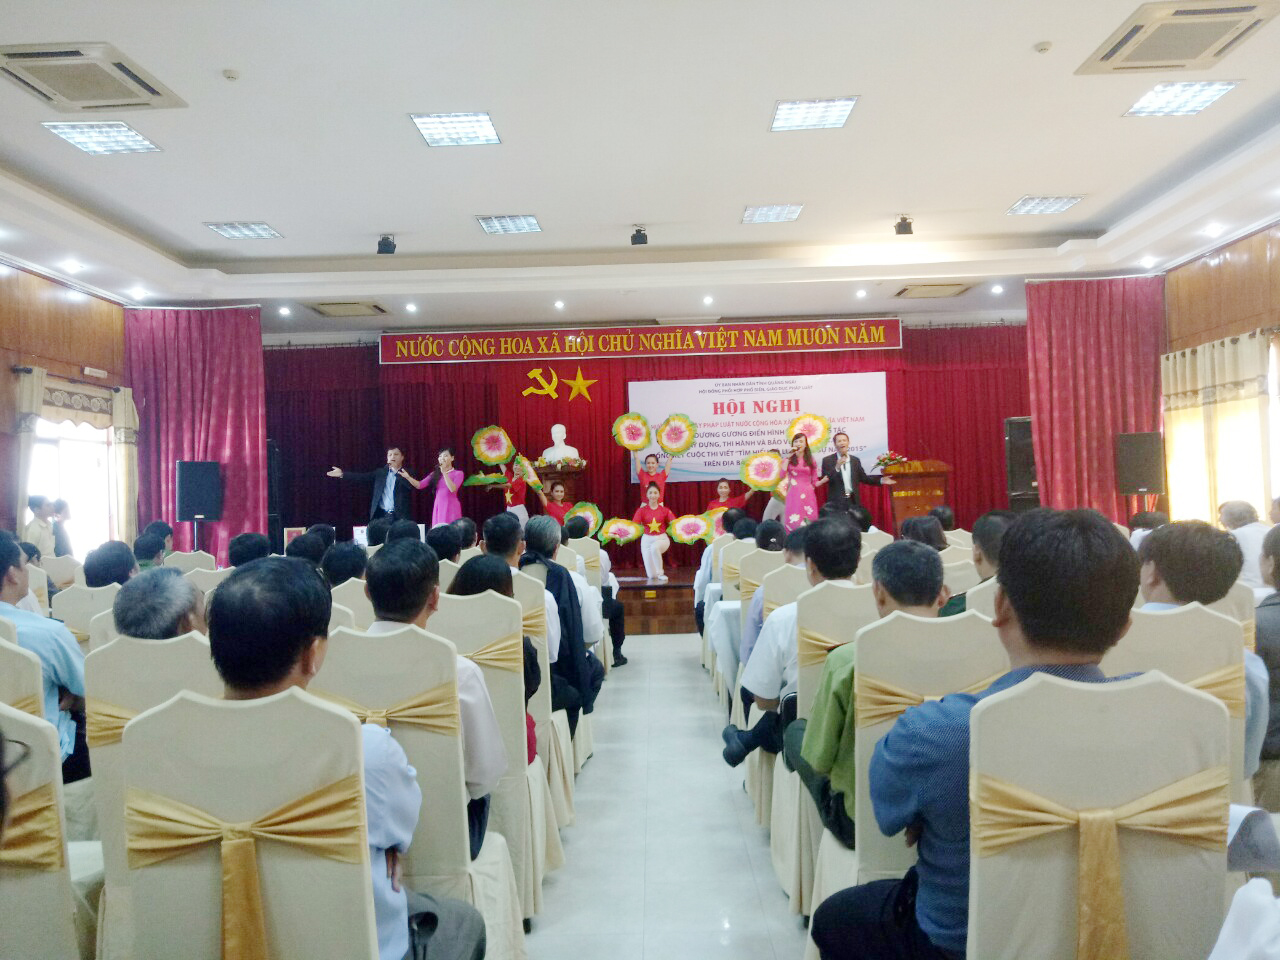 Hội nghị tại Khách sạn Hùng Vương - Quảng Ngãi